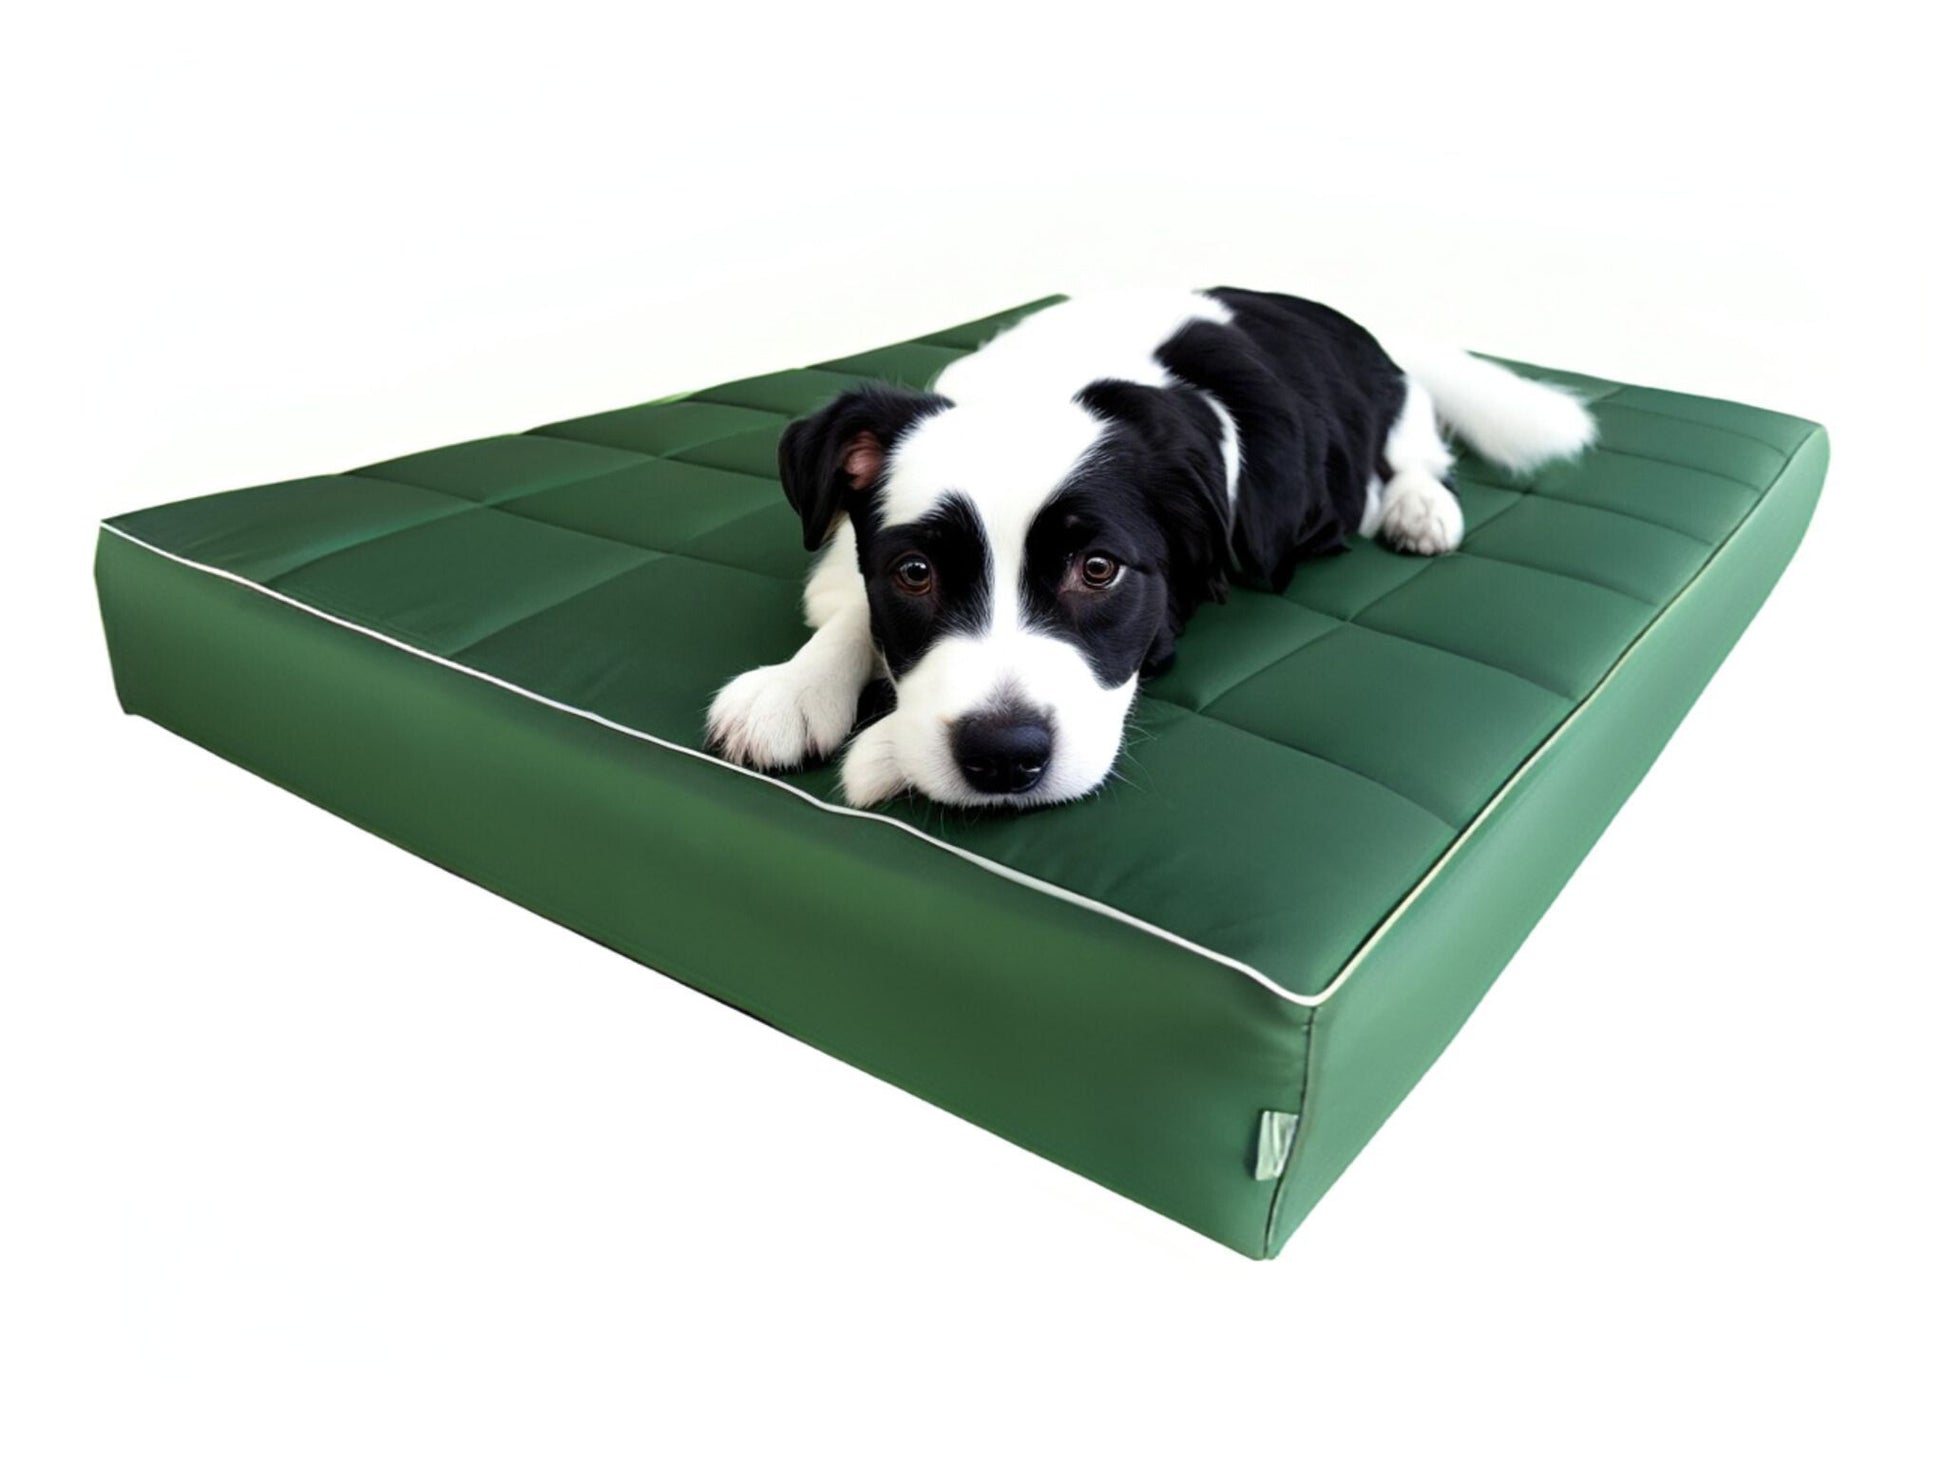 Pies na zielonym legowisku mikola 10 cm